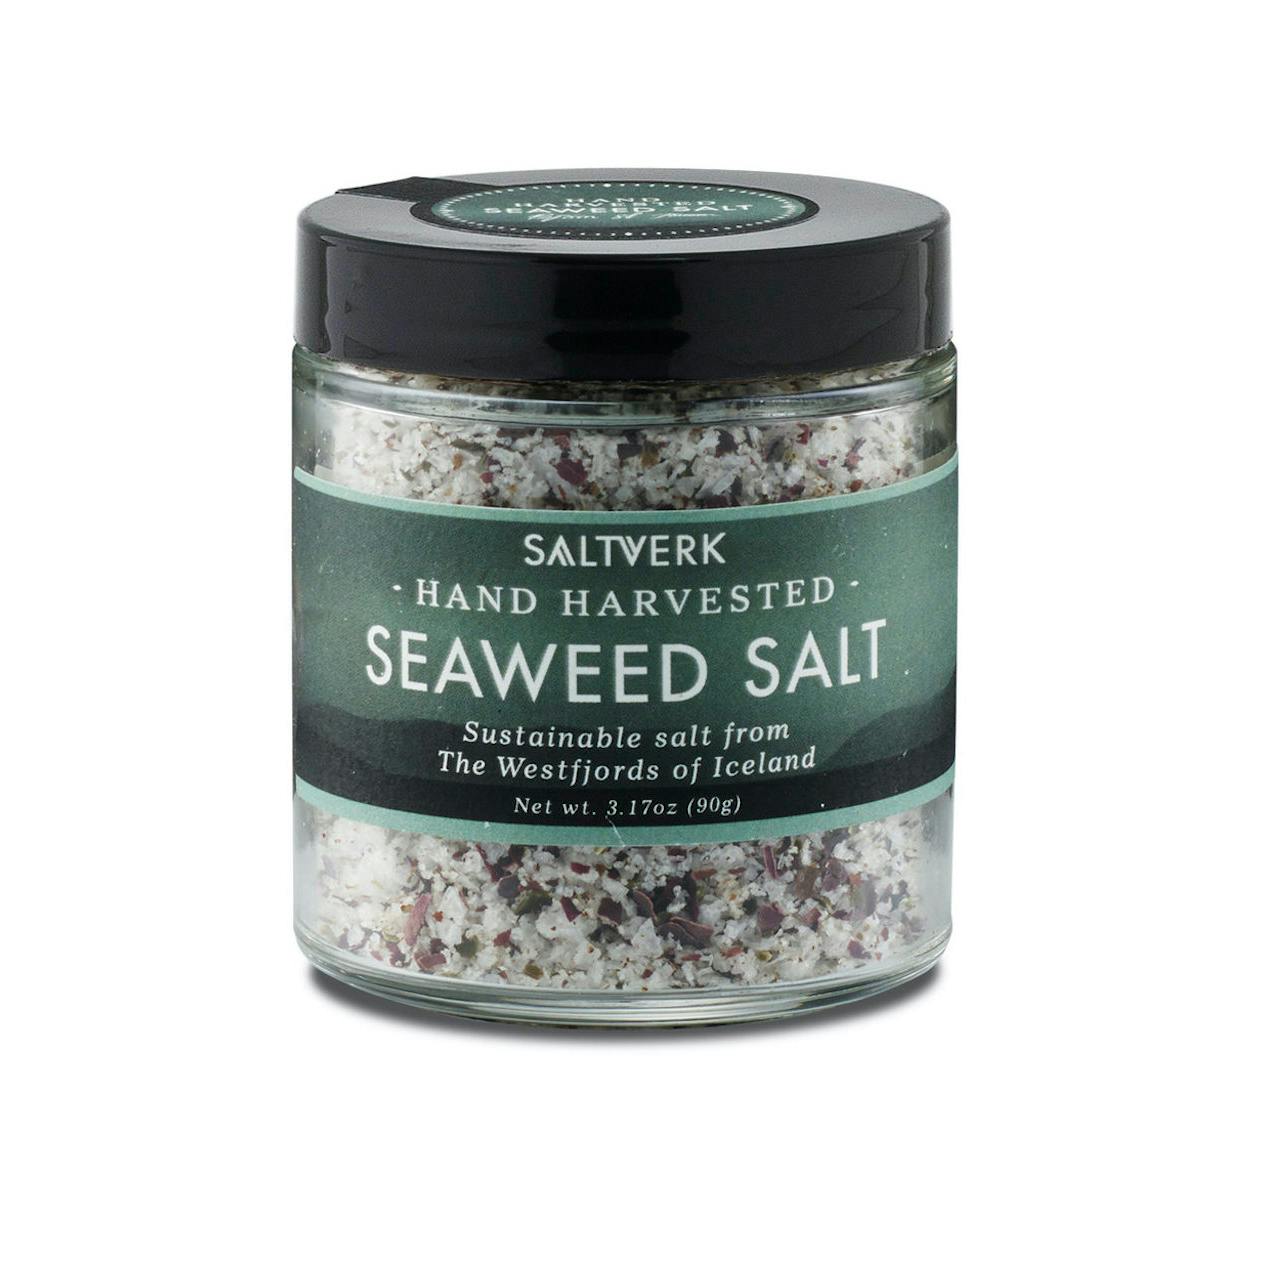 Seaweed Salt